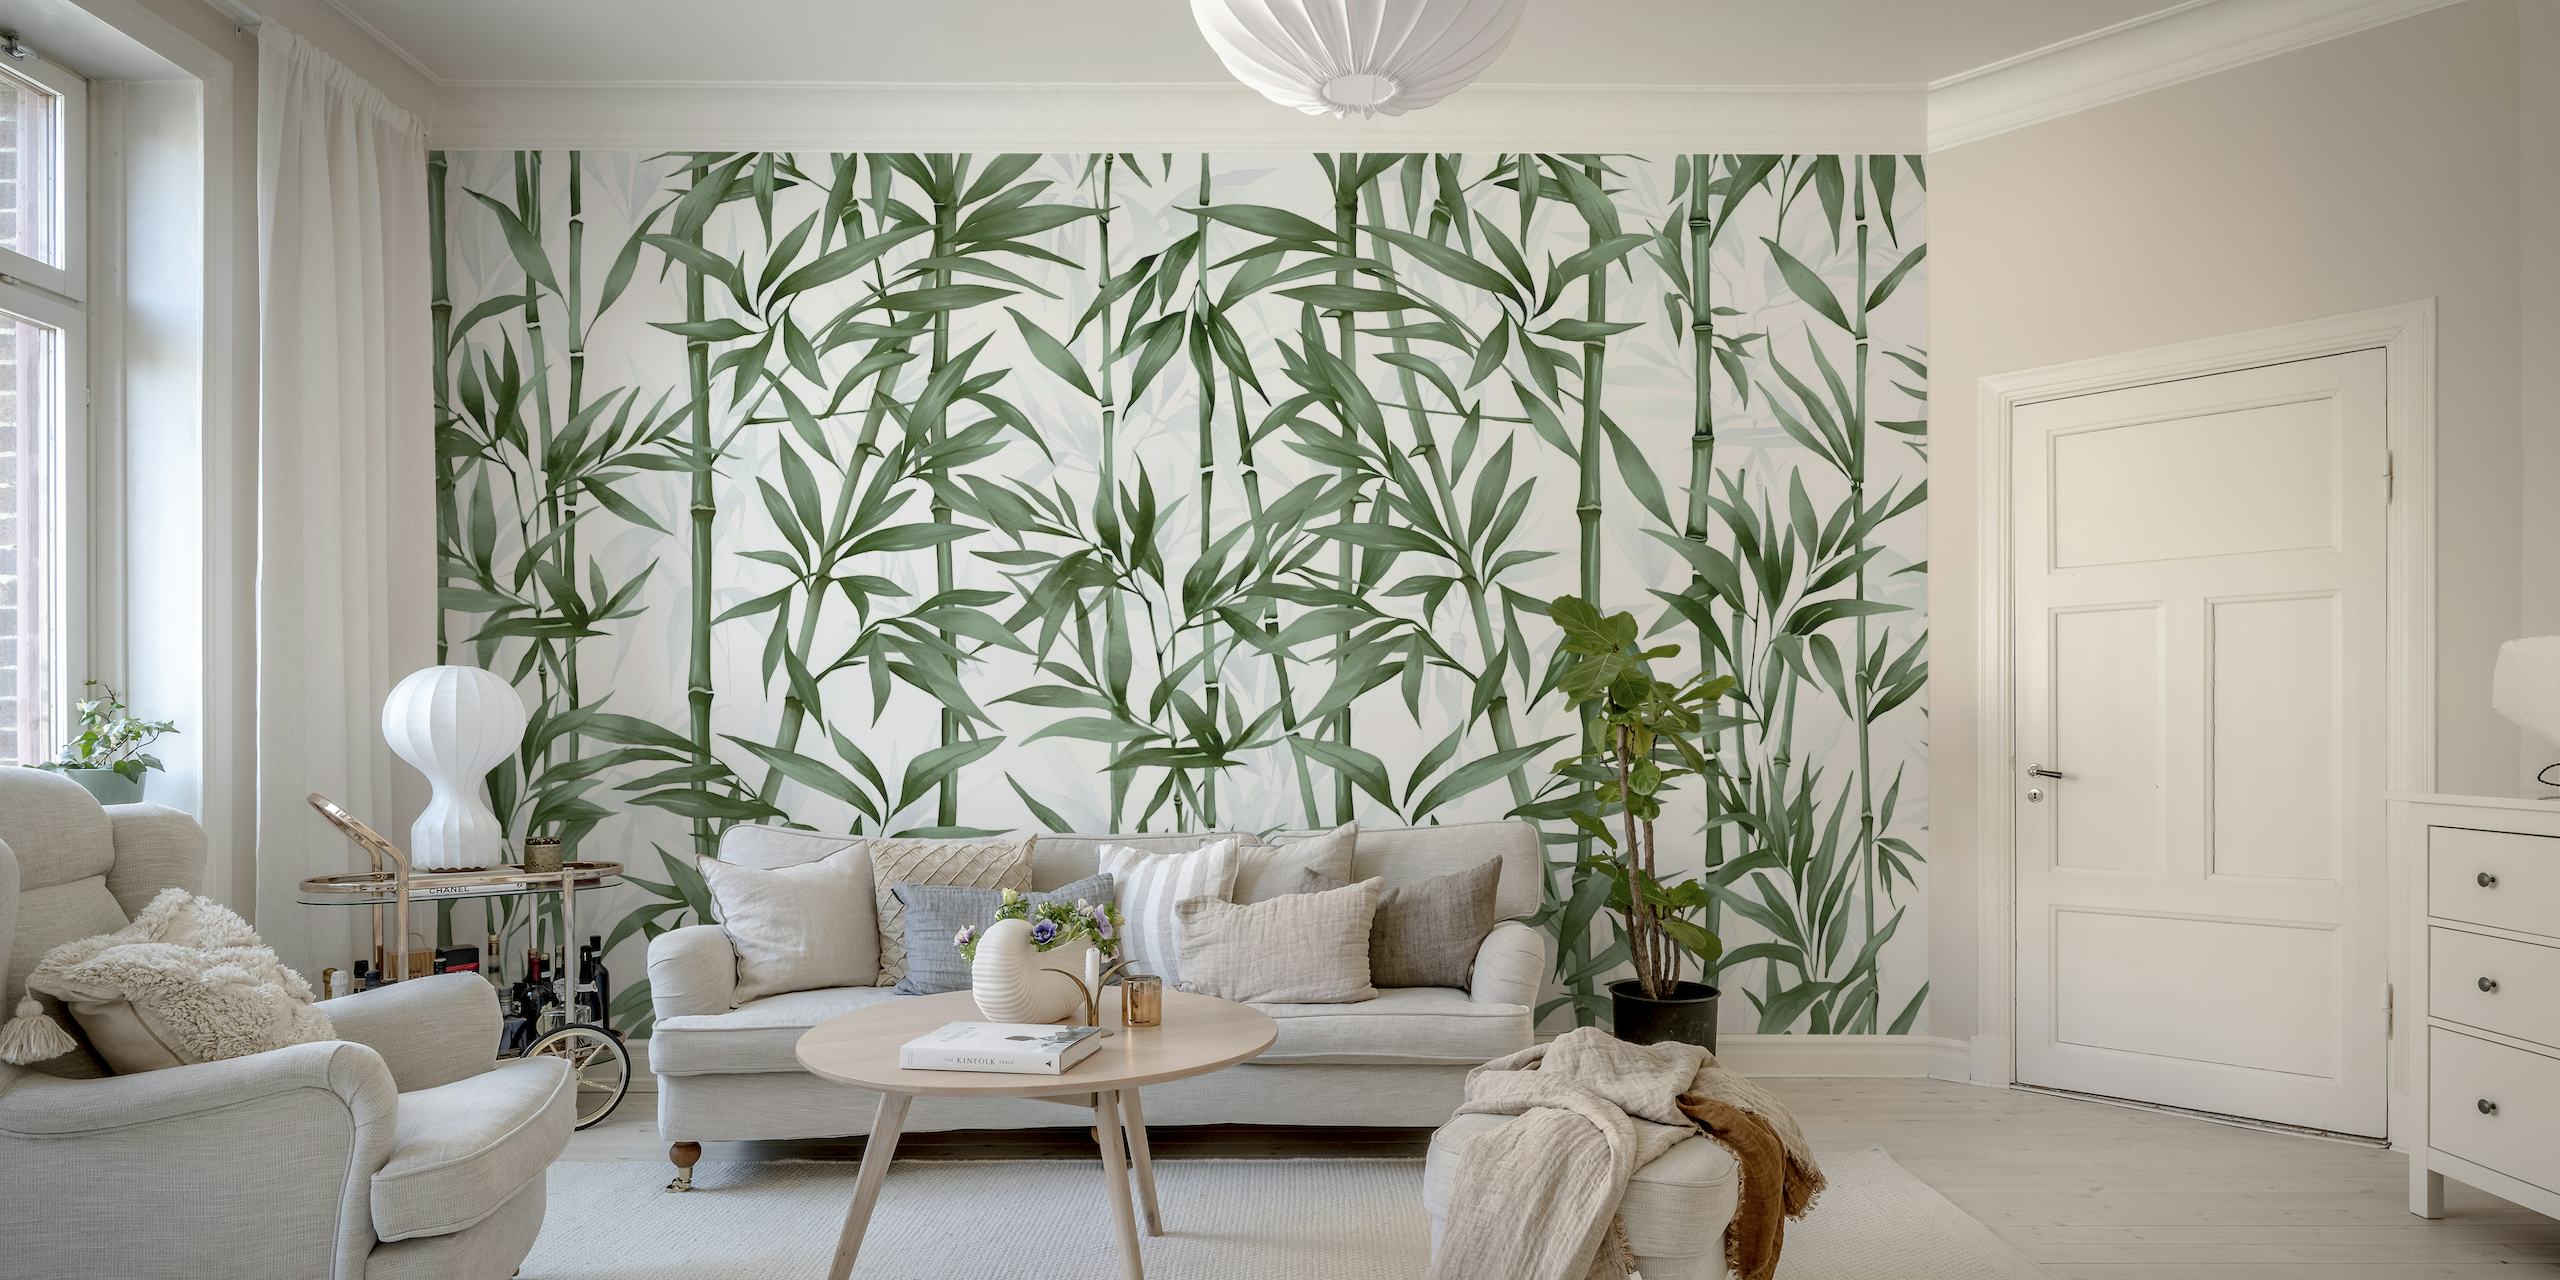 Vægmaleri af grønne bambusstilke til rolig indretning